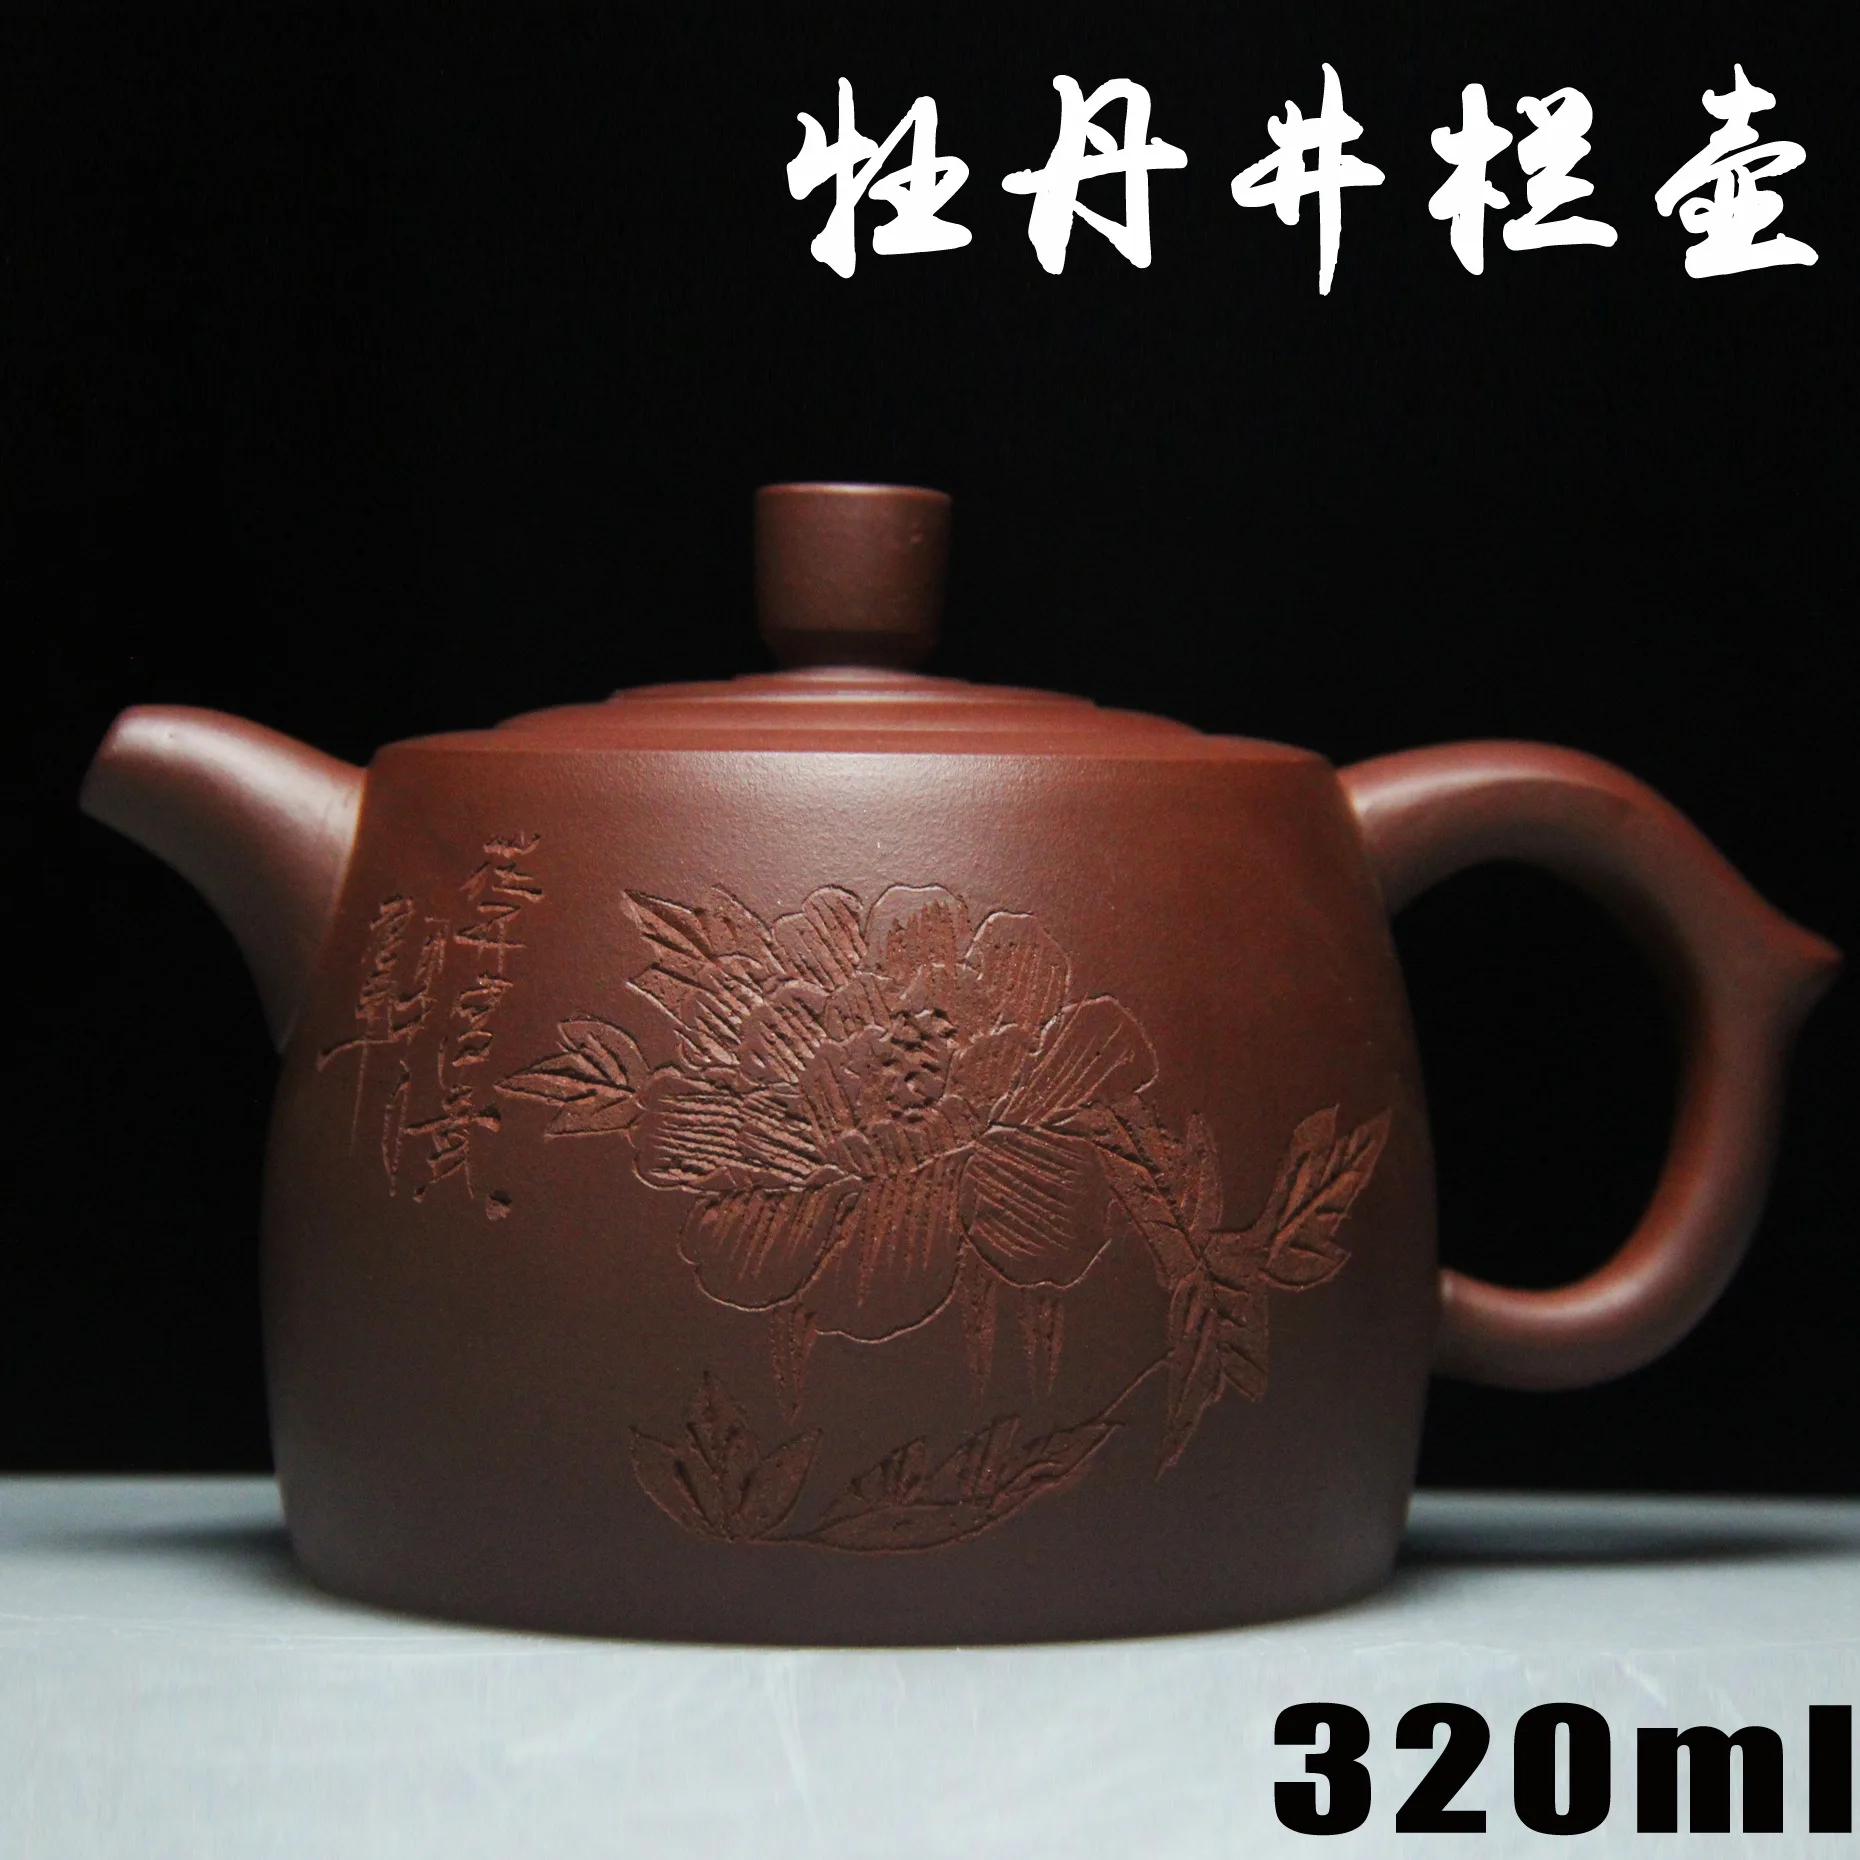 Горячее новое поступление чайник из исинской глины 320 мл фиолетовая глина керамический КИТАЙСКИЙ ручной работы фарфоровый чайник высокого качества